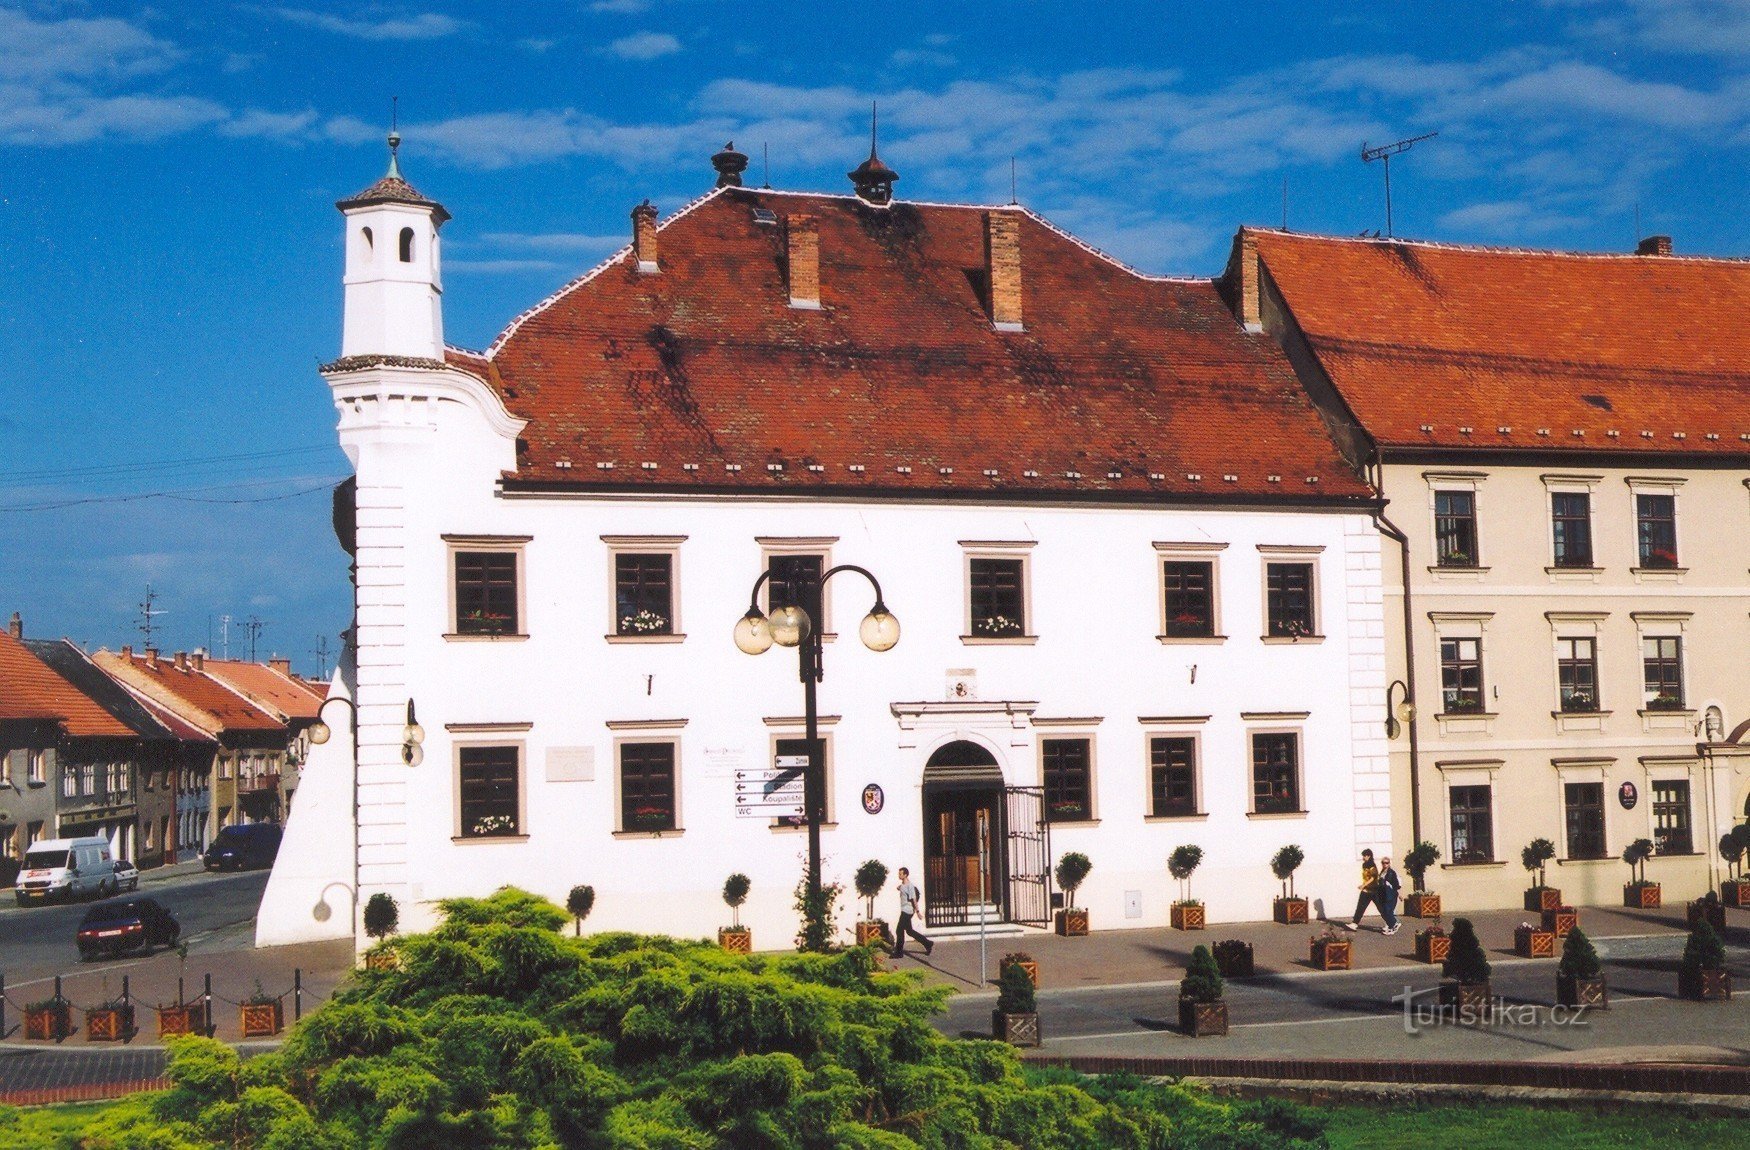 Slavkov u Brnu - renesansna gradska vijećnica